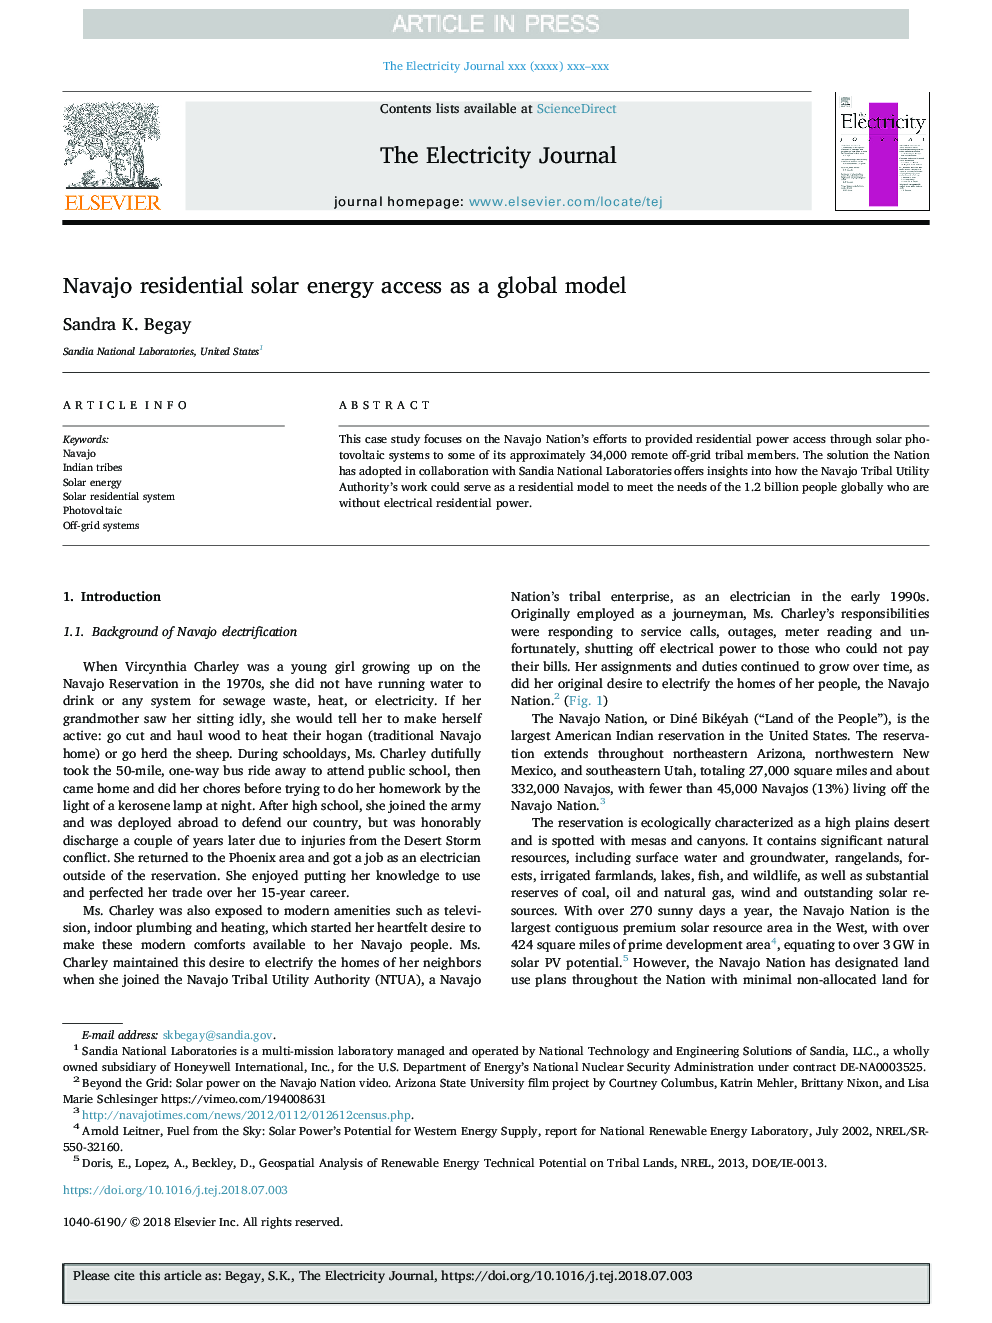 دسترسی به انرژی خورشیدی ناجیو به عنوان یک مدل جهانی